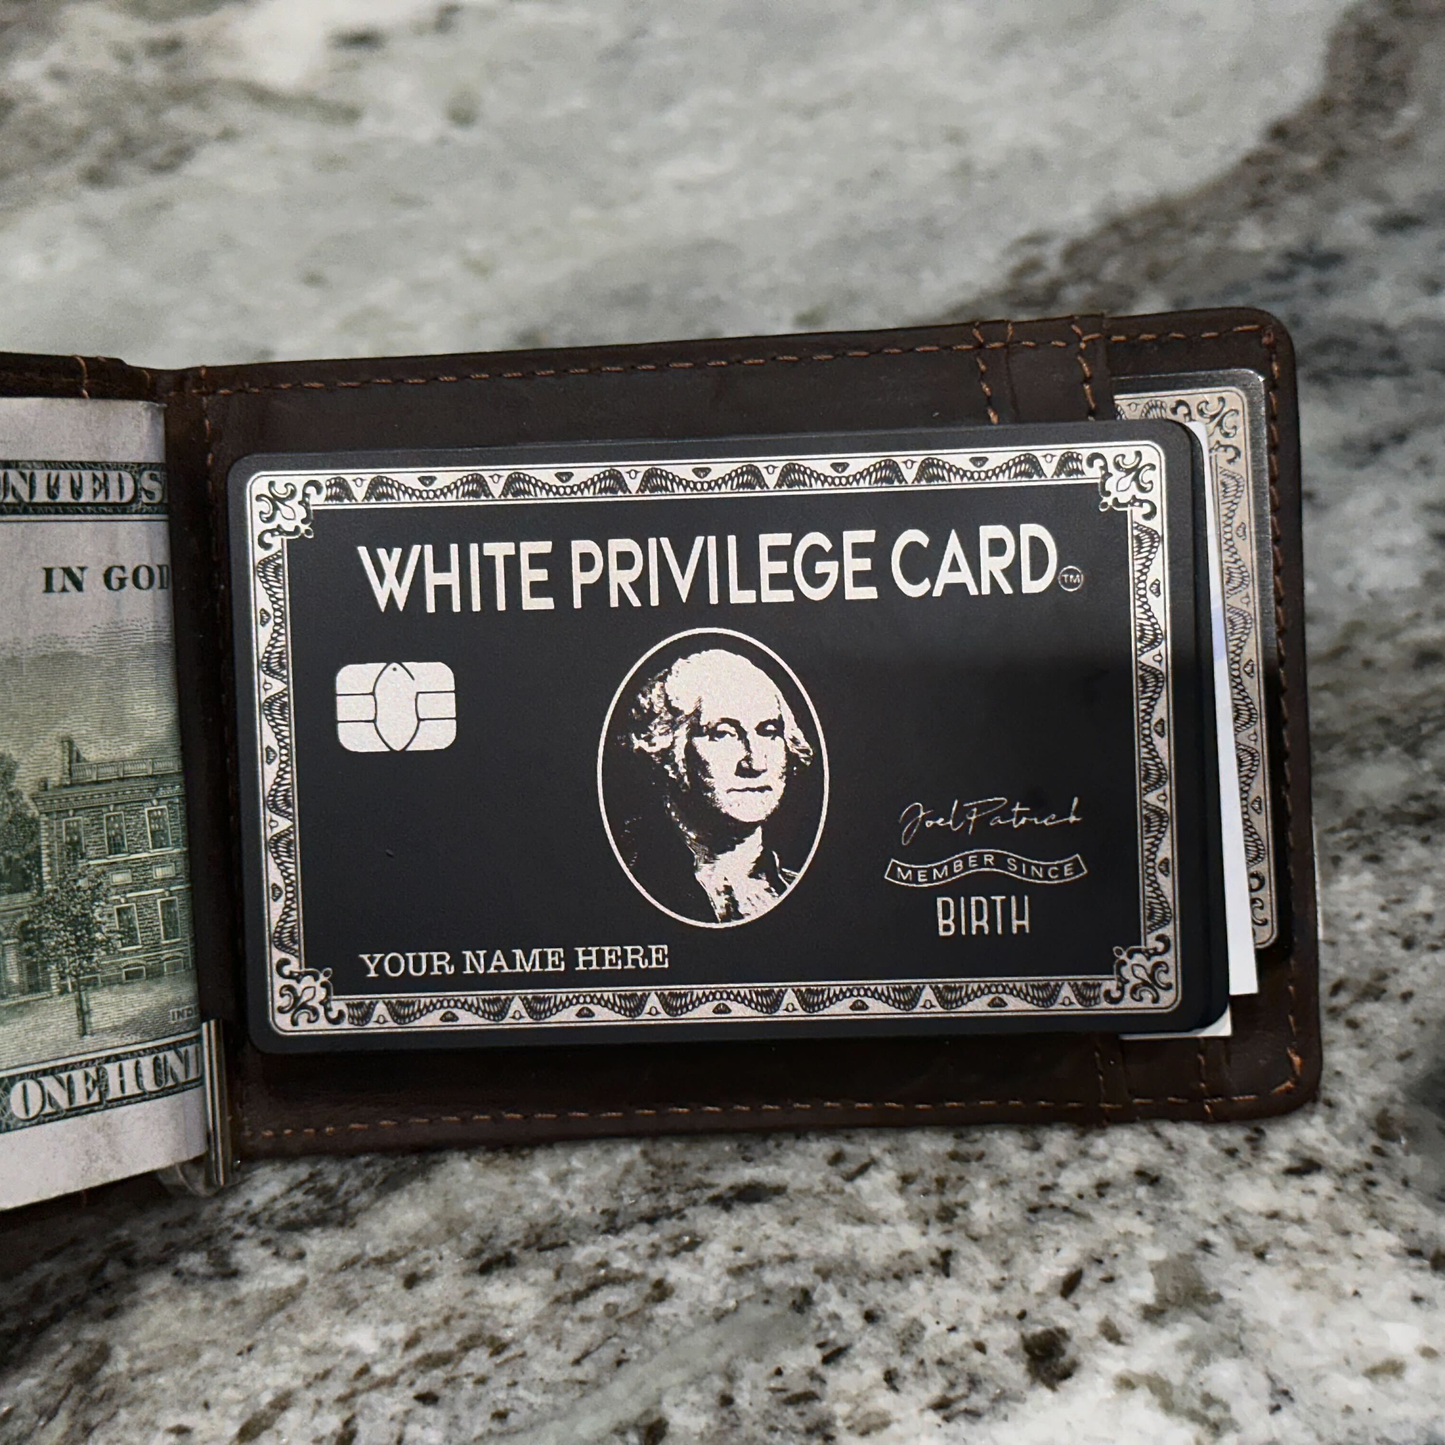 The White Privilege Card